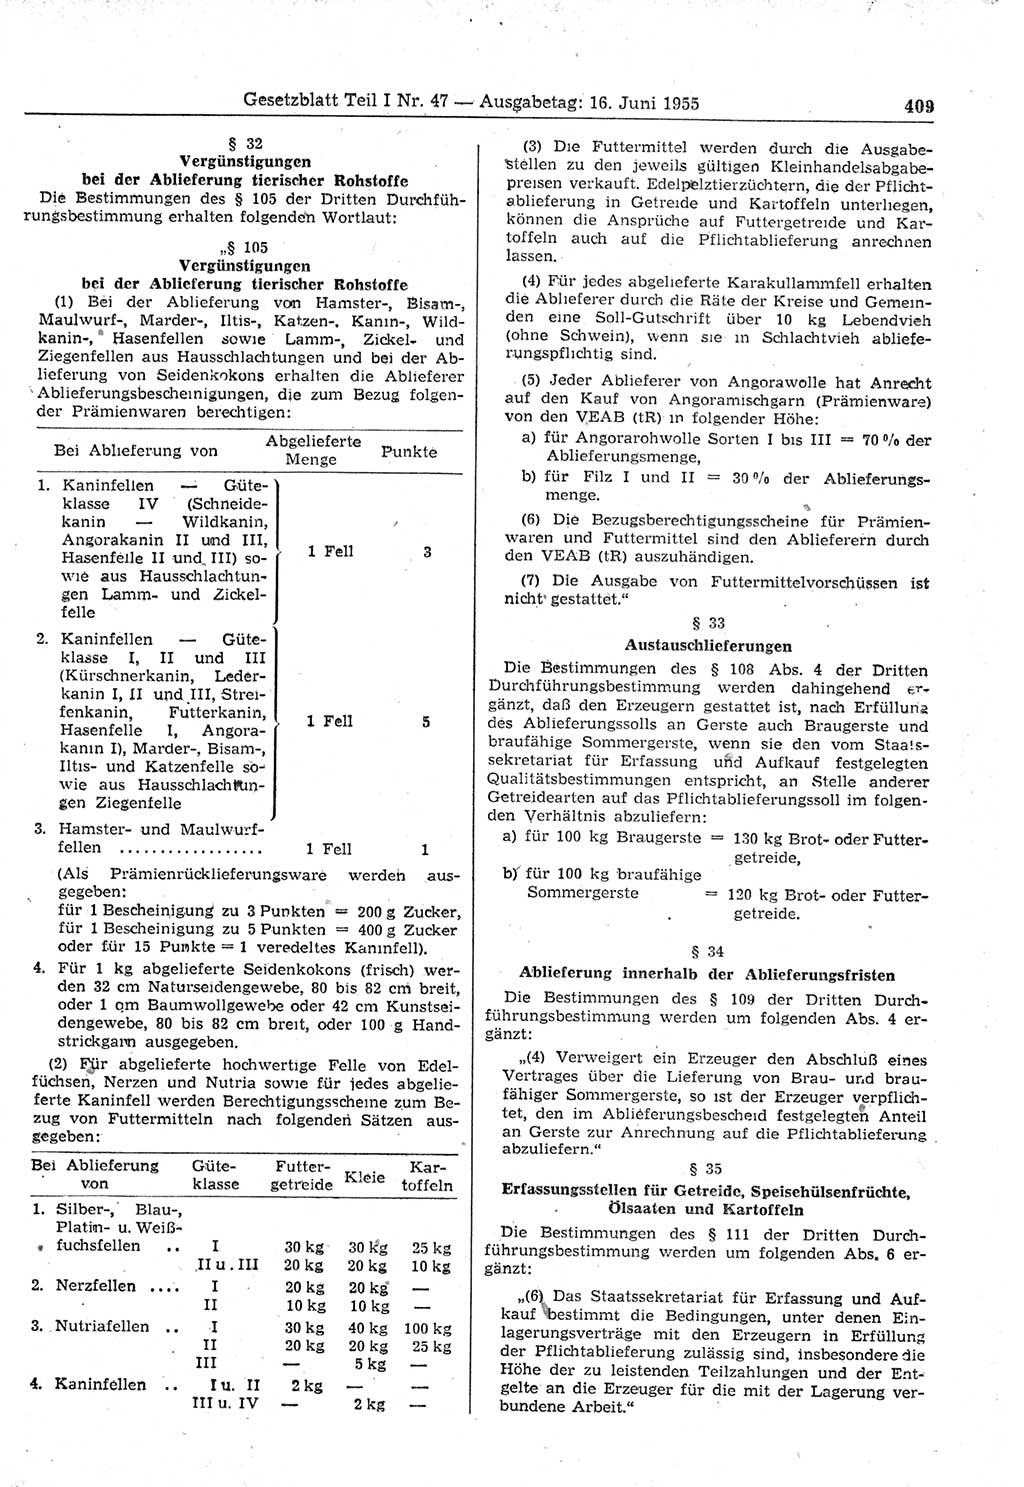 Gesetzblatt (GBl.) der Deutschen Demokratischen Republik (DDR) Teil Ⅰ 1955, Seite 409 (GBl. DDR Ⅰ 1955, S. 409)